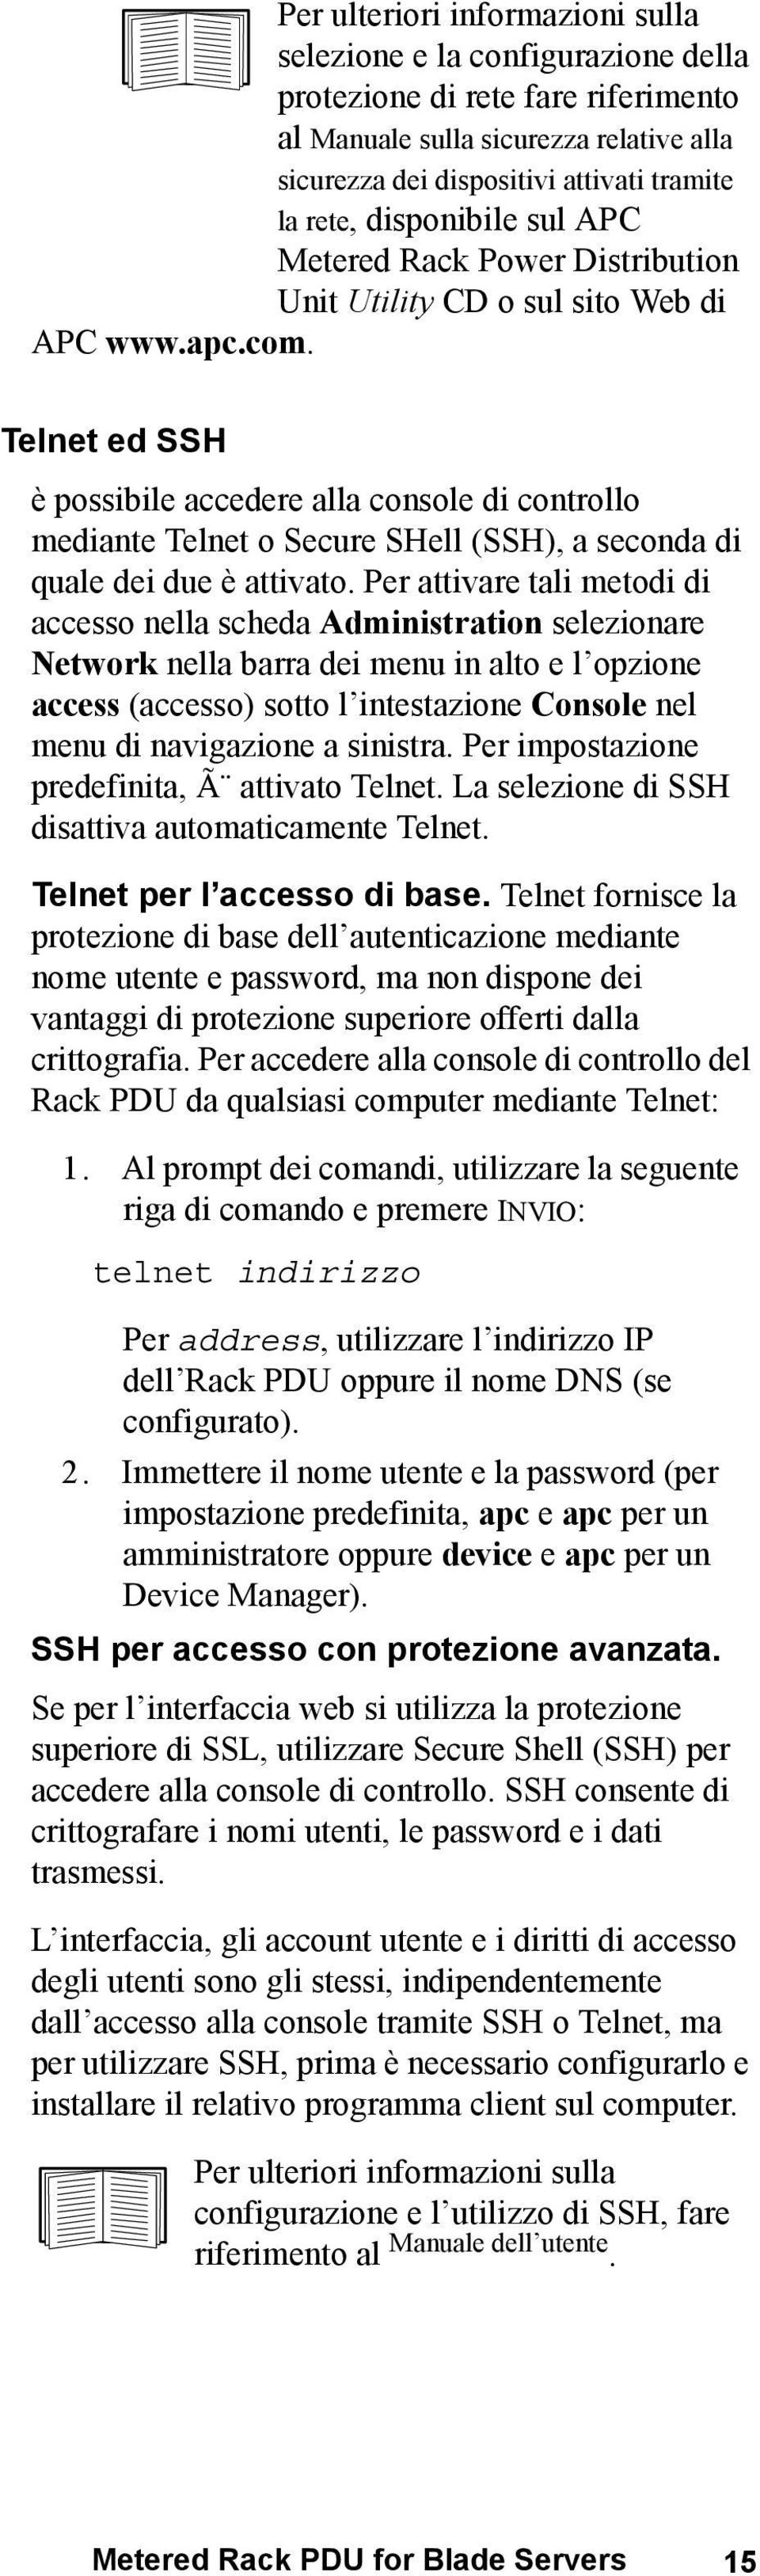 Telnet ed SSH è possibile accedere alla console di controllo mediante Telnet o Secure SHell (SSH), a seconda di quale dei due è attivato.